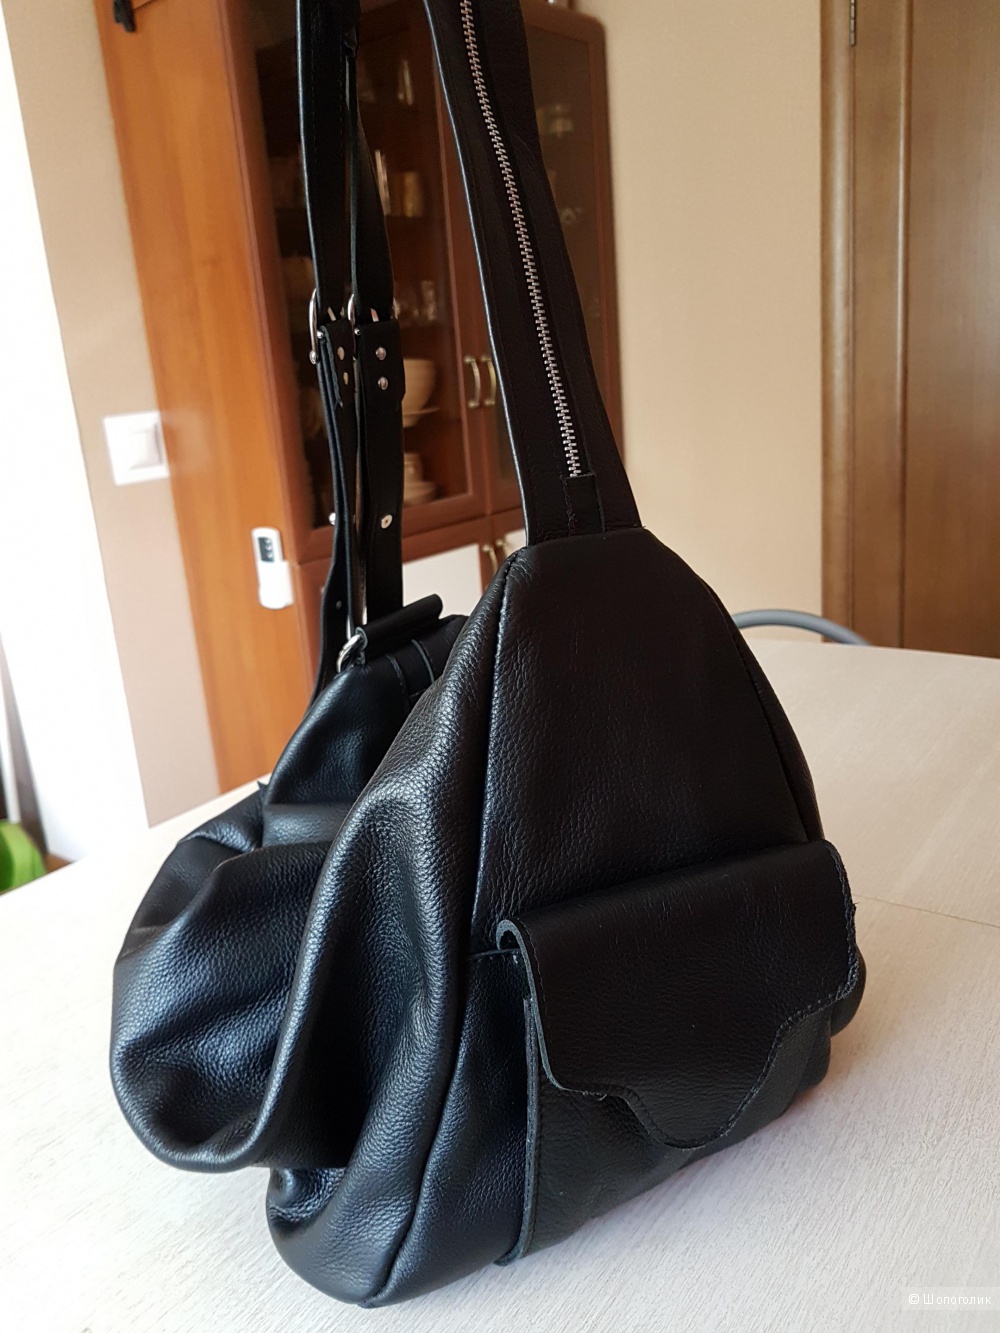 Сумка-рюкзак, кожа, чёрный цвет